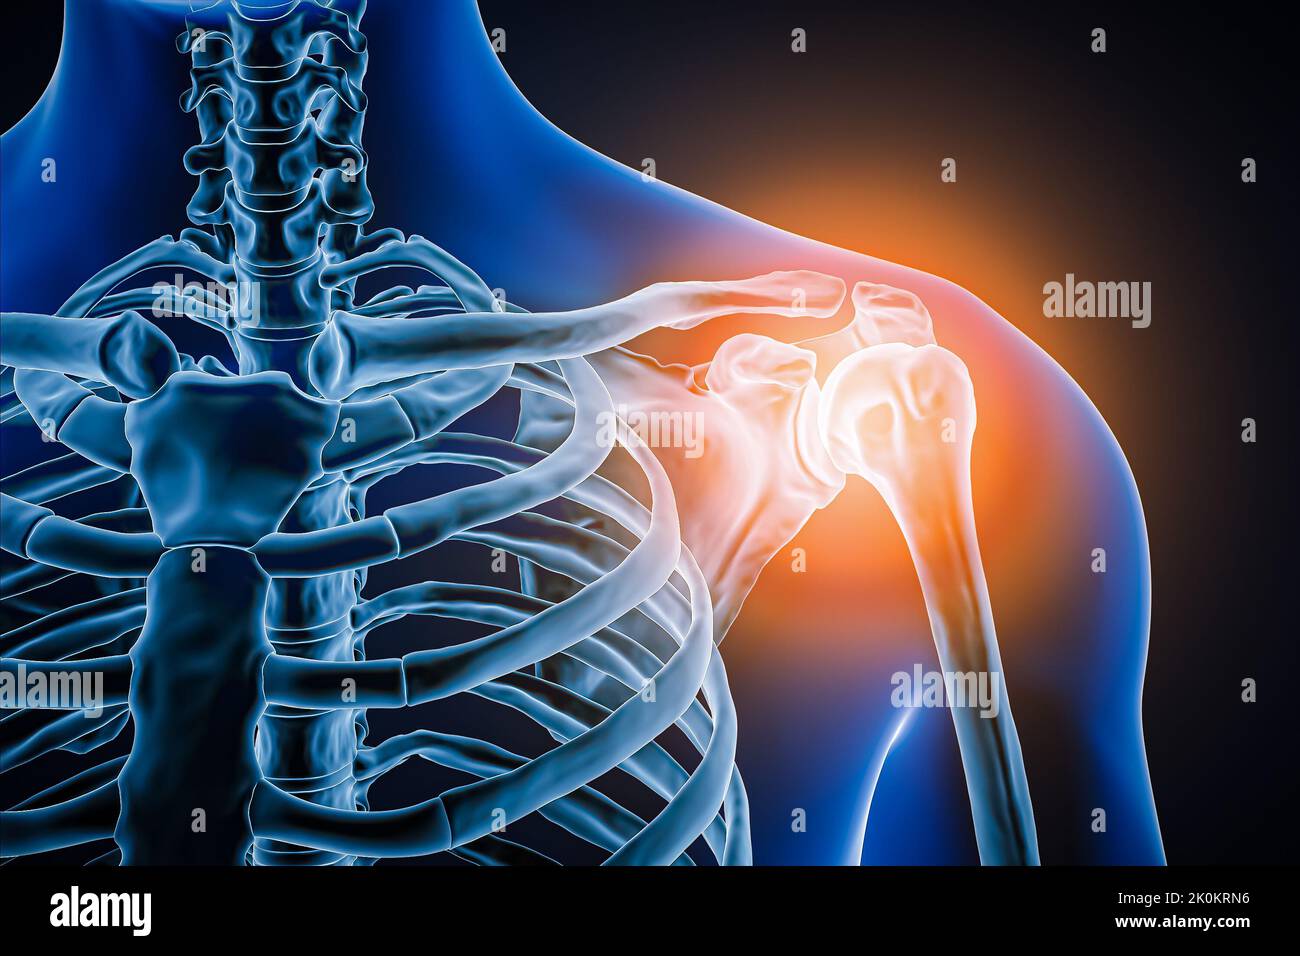 Vue antérieure ou avant de l'articulation de l'épaule et des os humains avec illustration de l'inflammation 3D. Pathologie, douleur articulaire, anatomie, ostéologie, r Banque D'Images